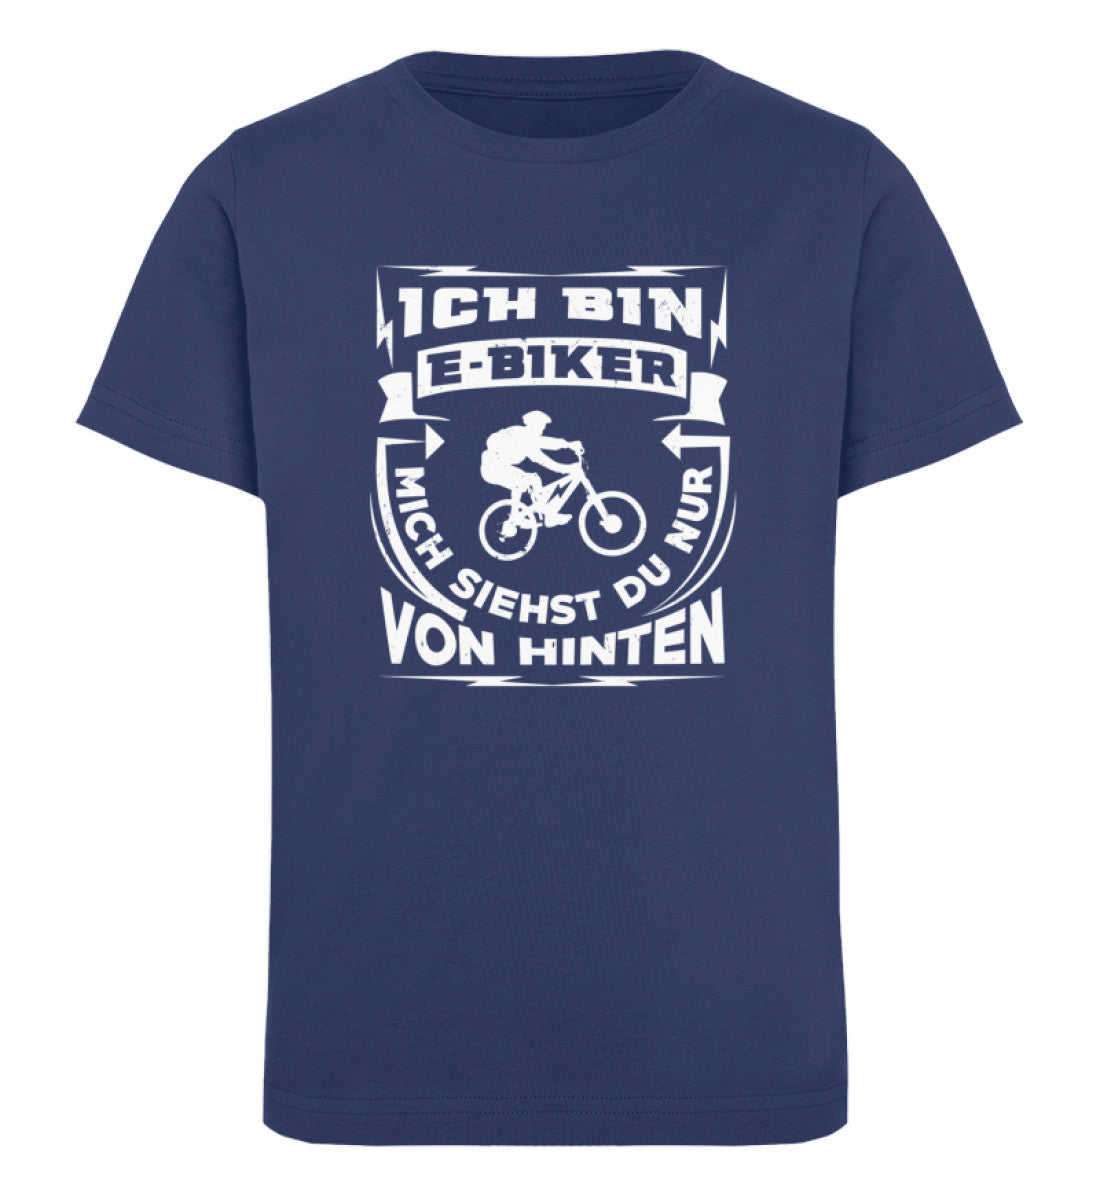 Bin ein E-BIker - Siehst mich von hinten - Kinder Premium Organic T-Shirt e-bike Navyblau